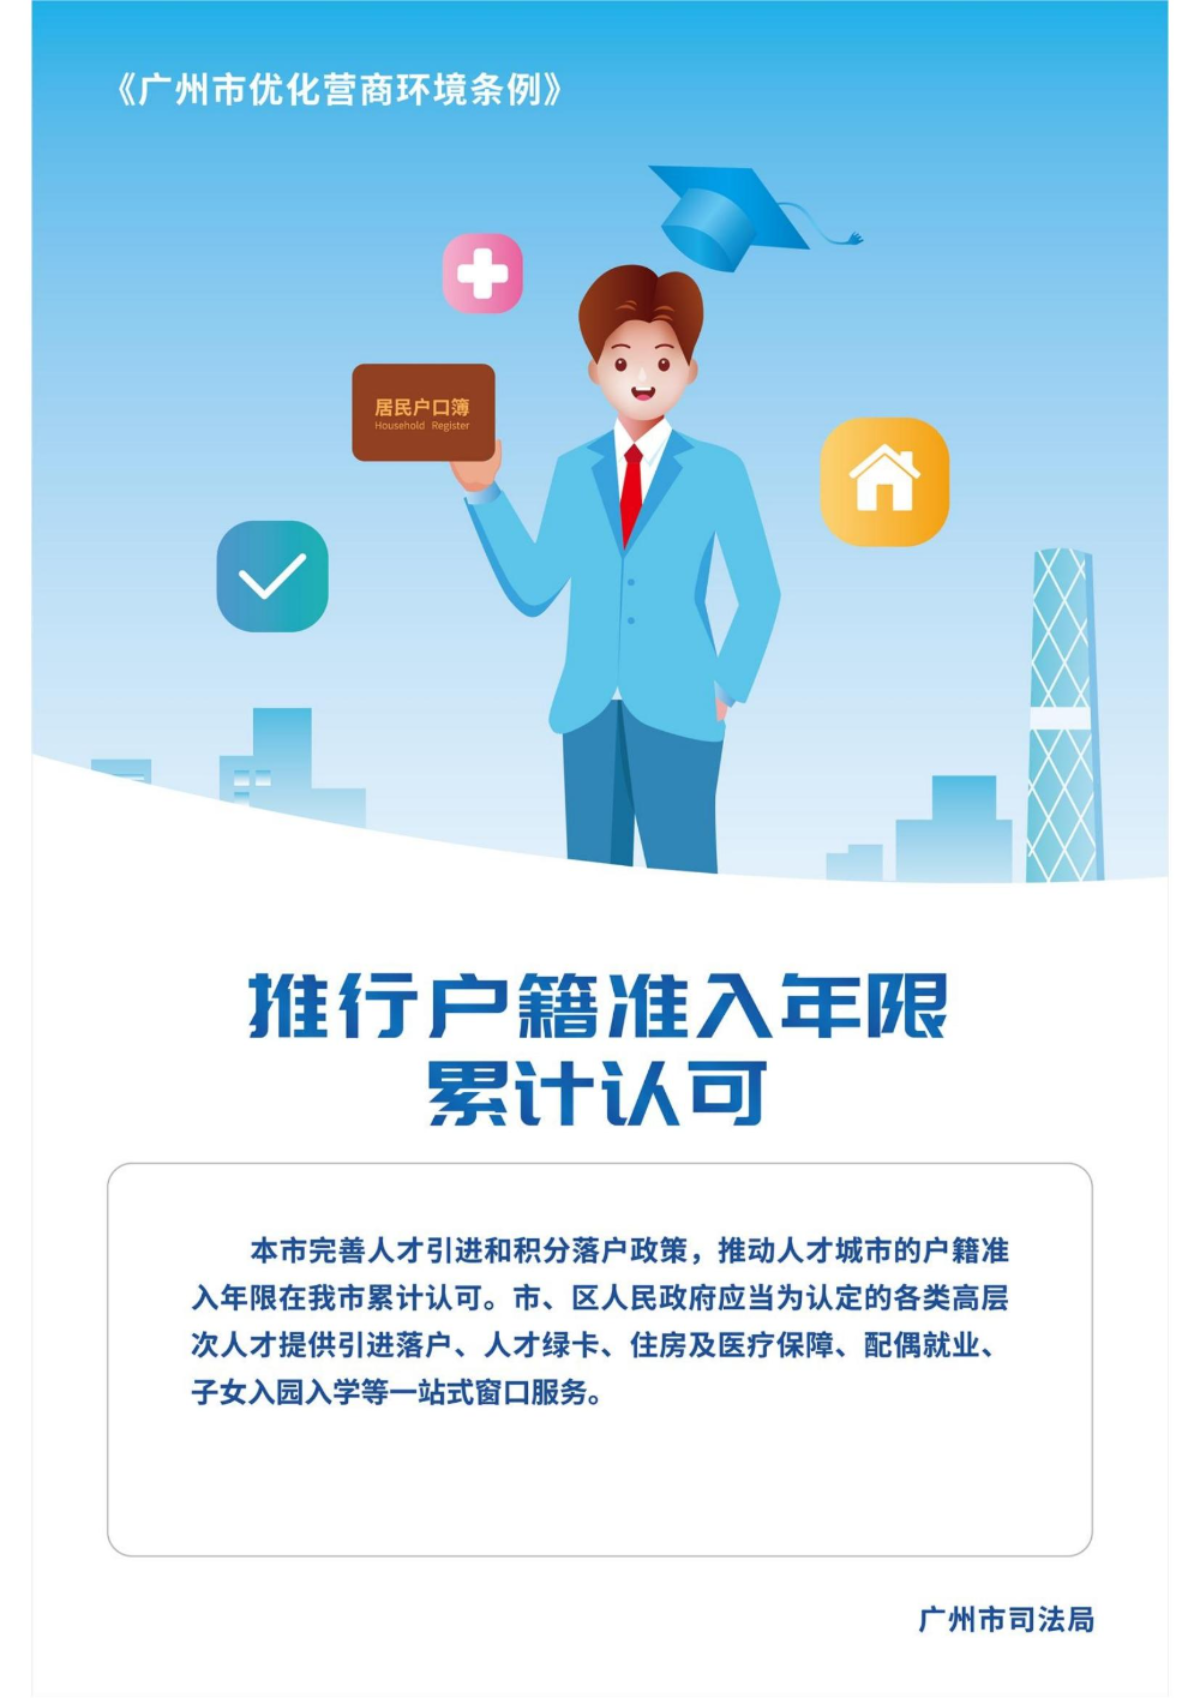 广州市优化营商环境条例宣传海报_03.jpg